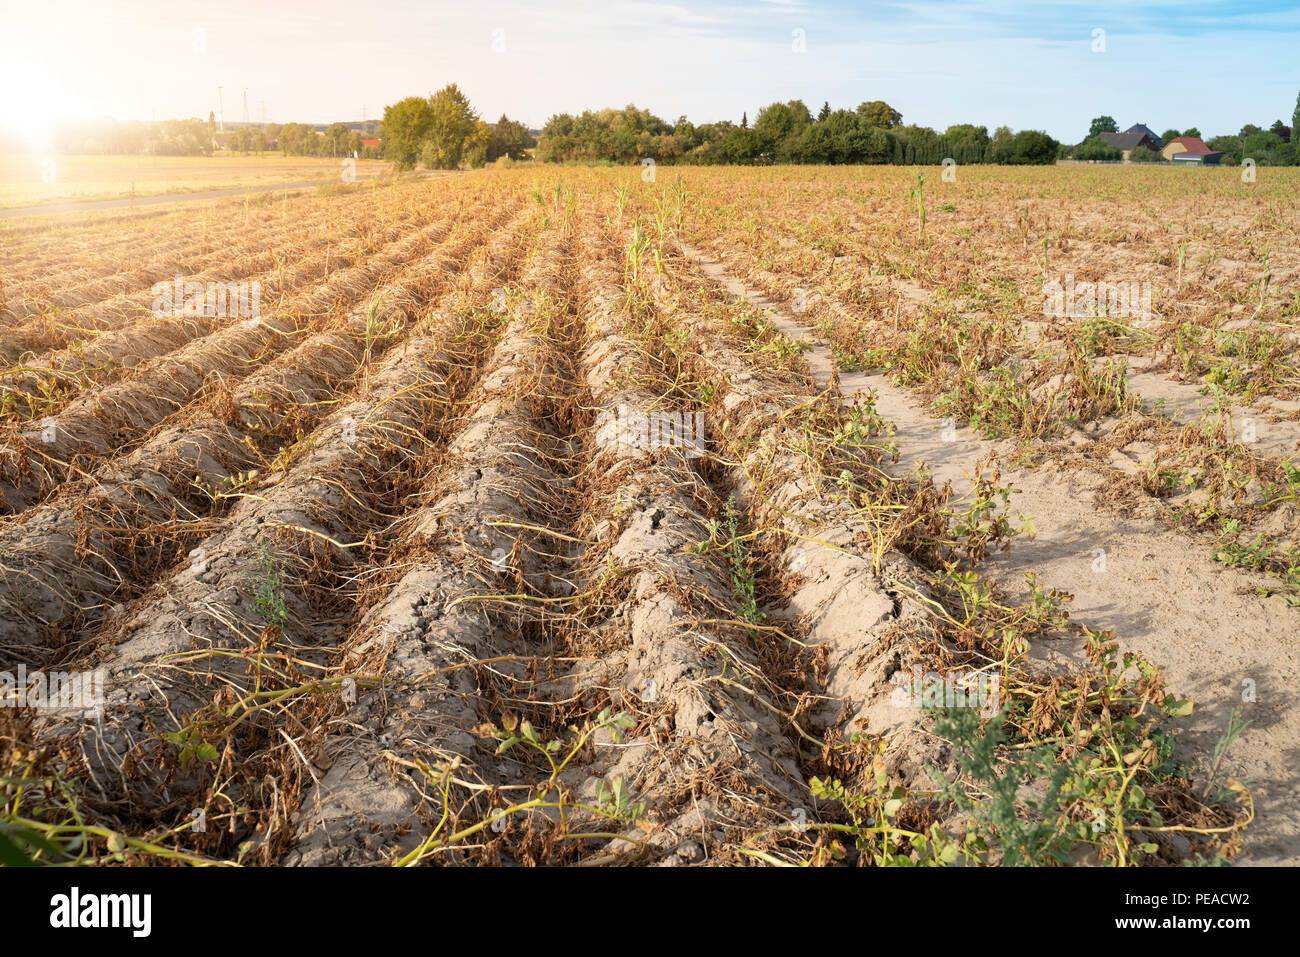 Landwirtschaft in Deutschland. Im heißen Sommer, die Trockenheit zerstört die kultivierten Pflanzen. Die Pflanzen werden in den Zeilen auf der trockenen, knusprigem Boden getrocknet. Stockfoto